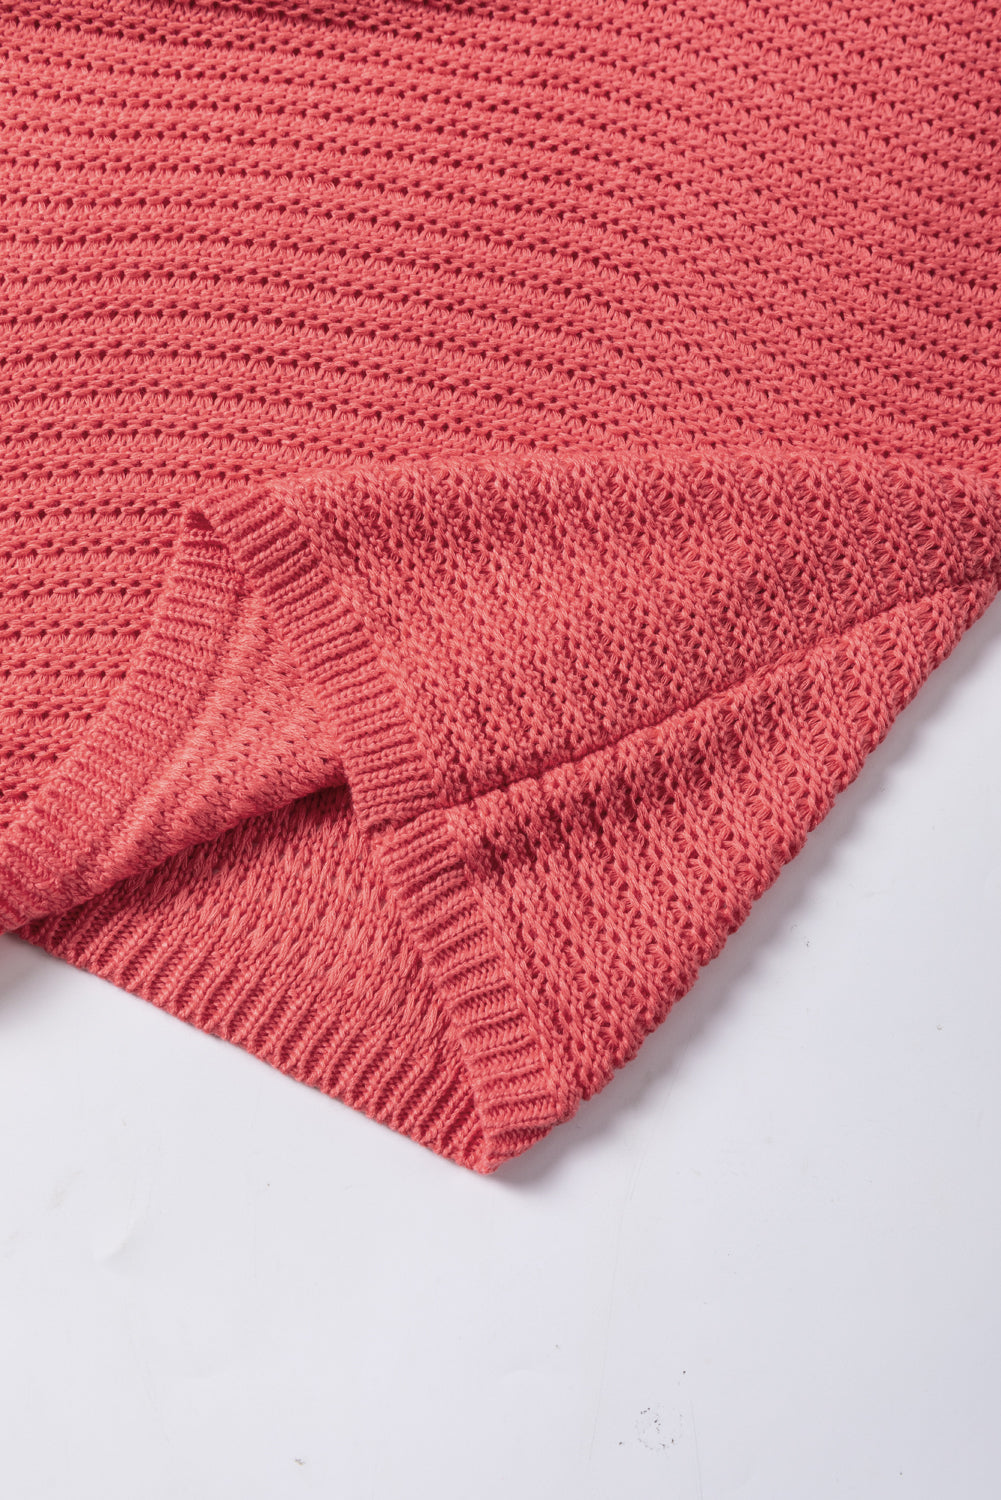 Ginger enobarvni ohlapni pulover s kratkimi rokavi